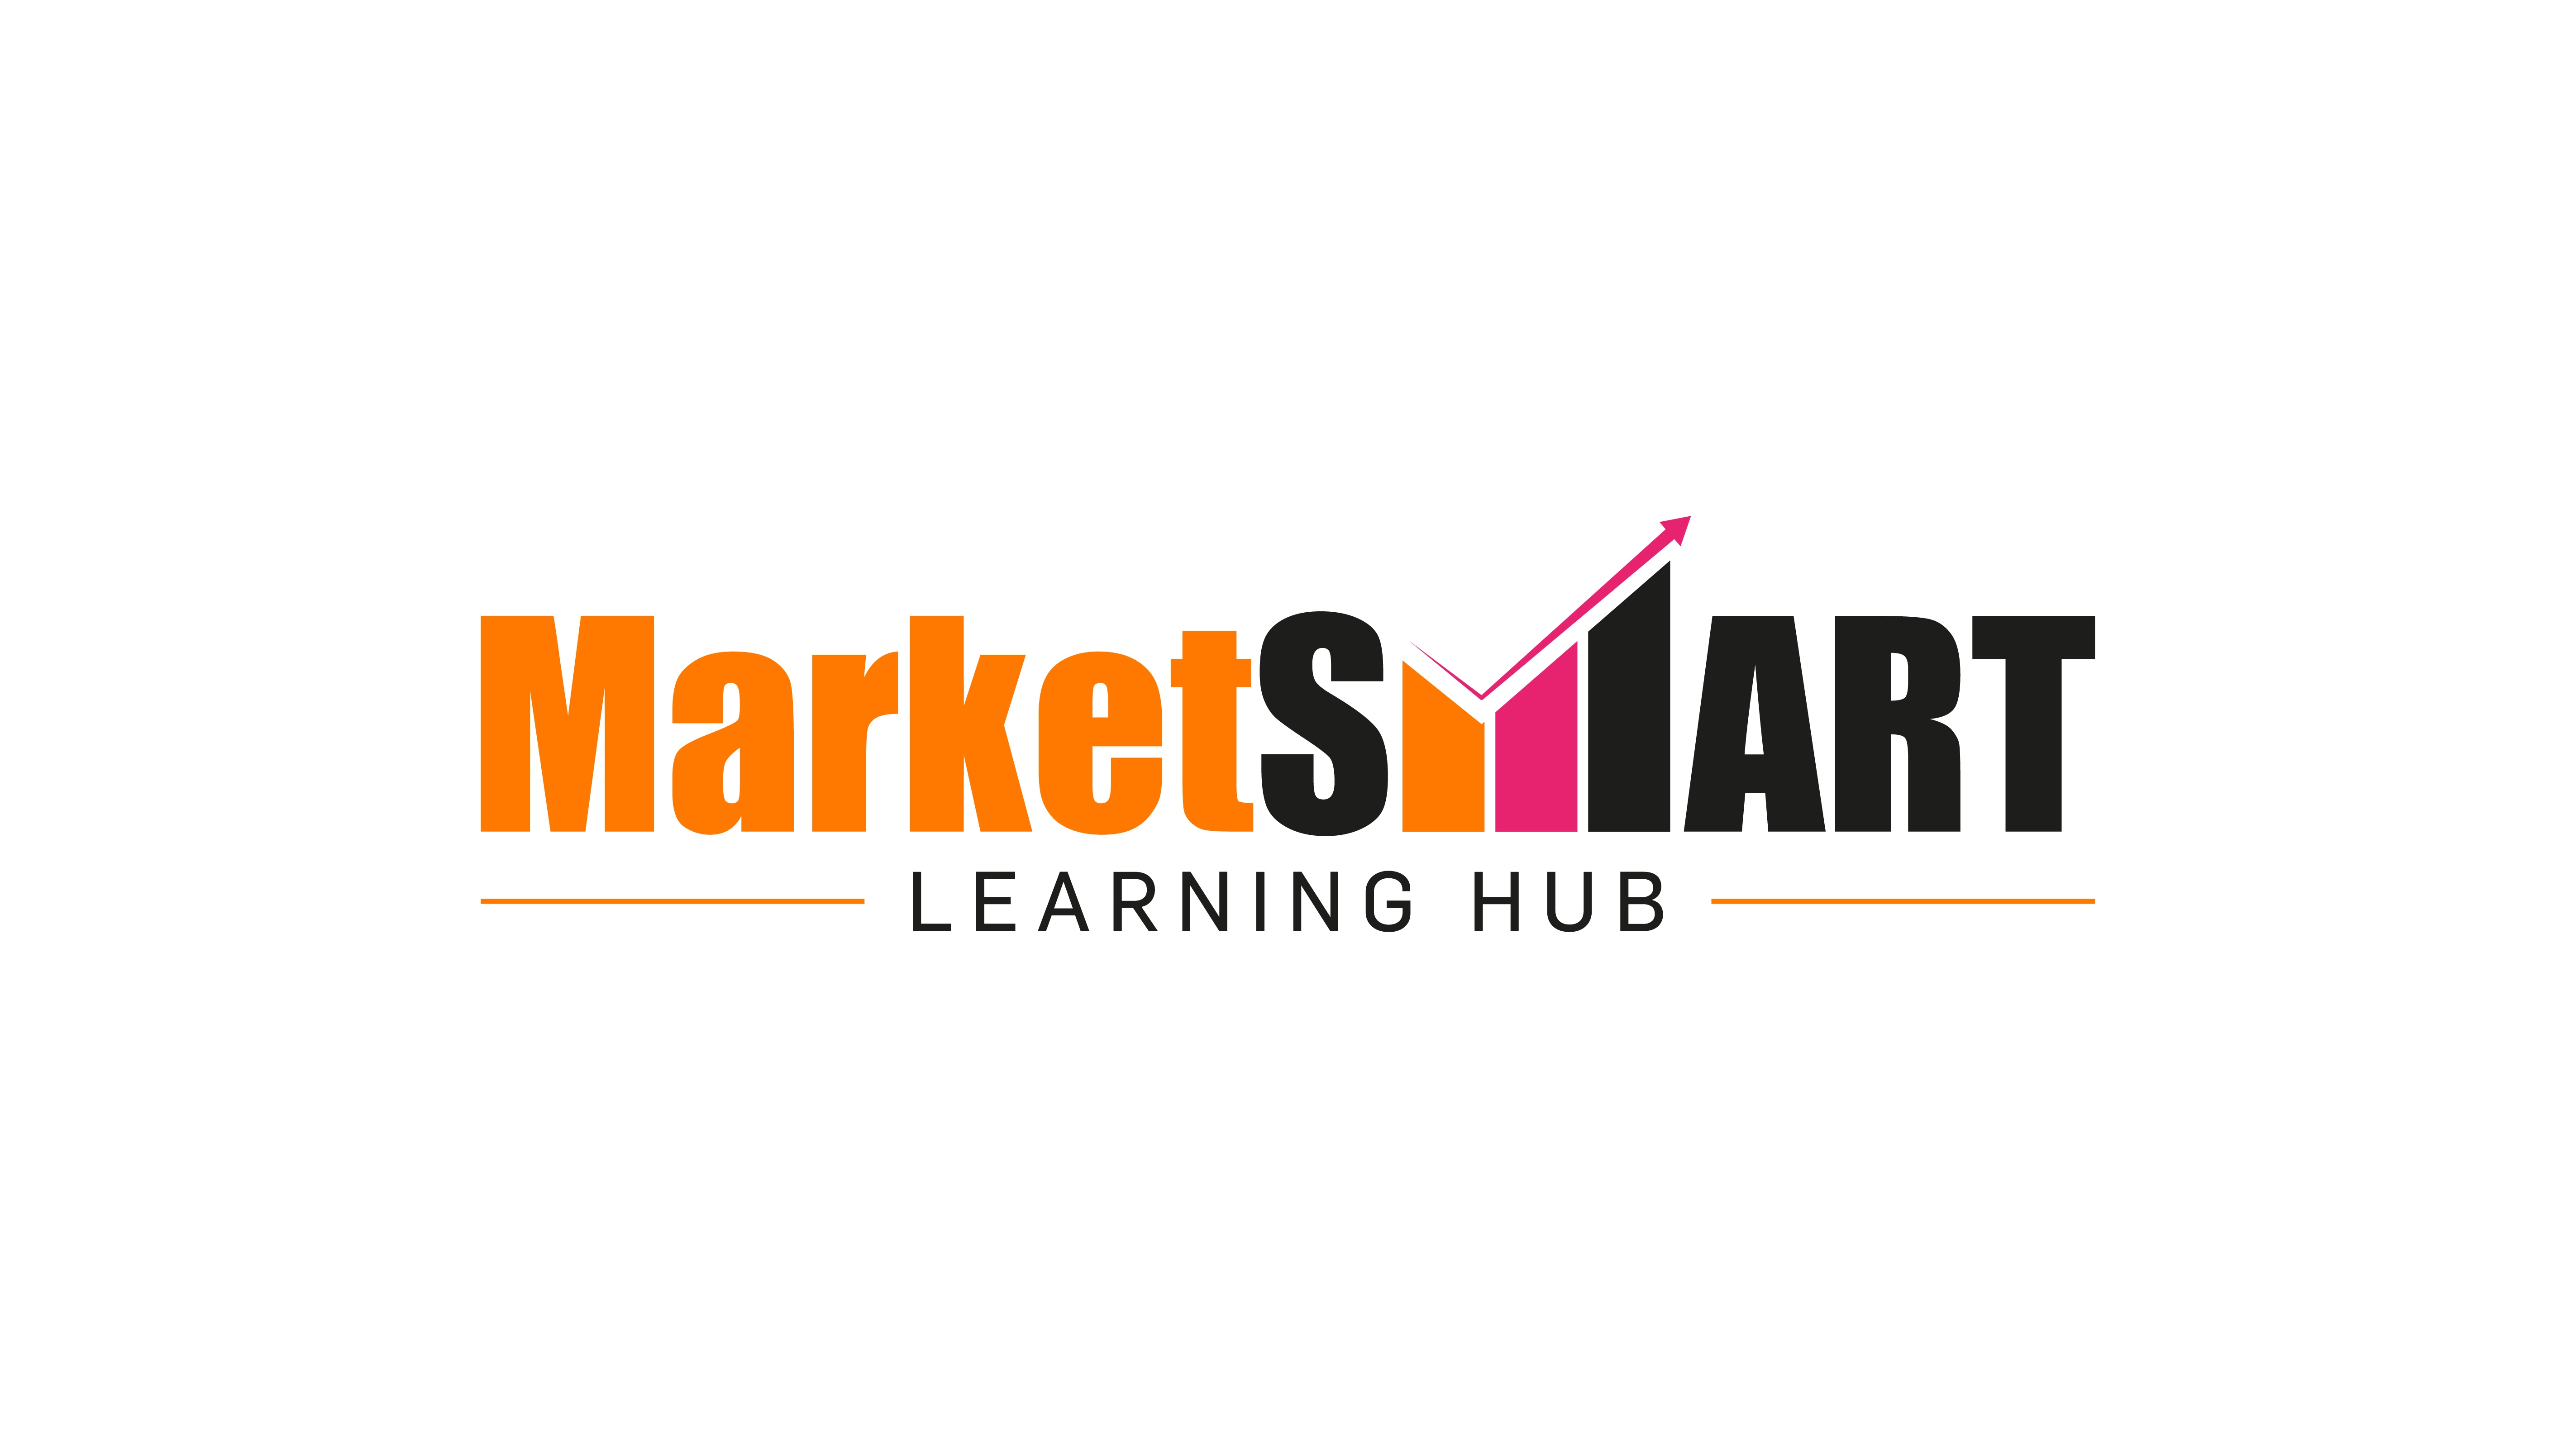 Learn - MarketSMART Learning Hub